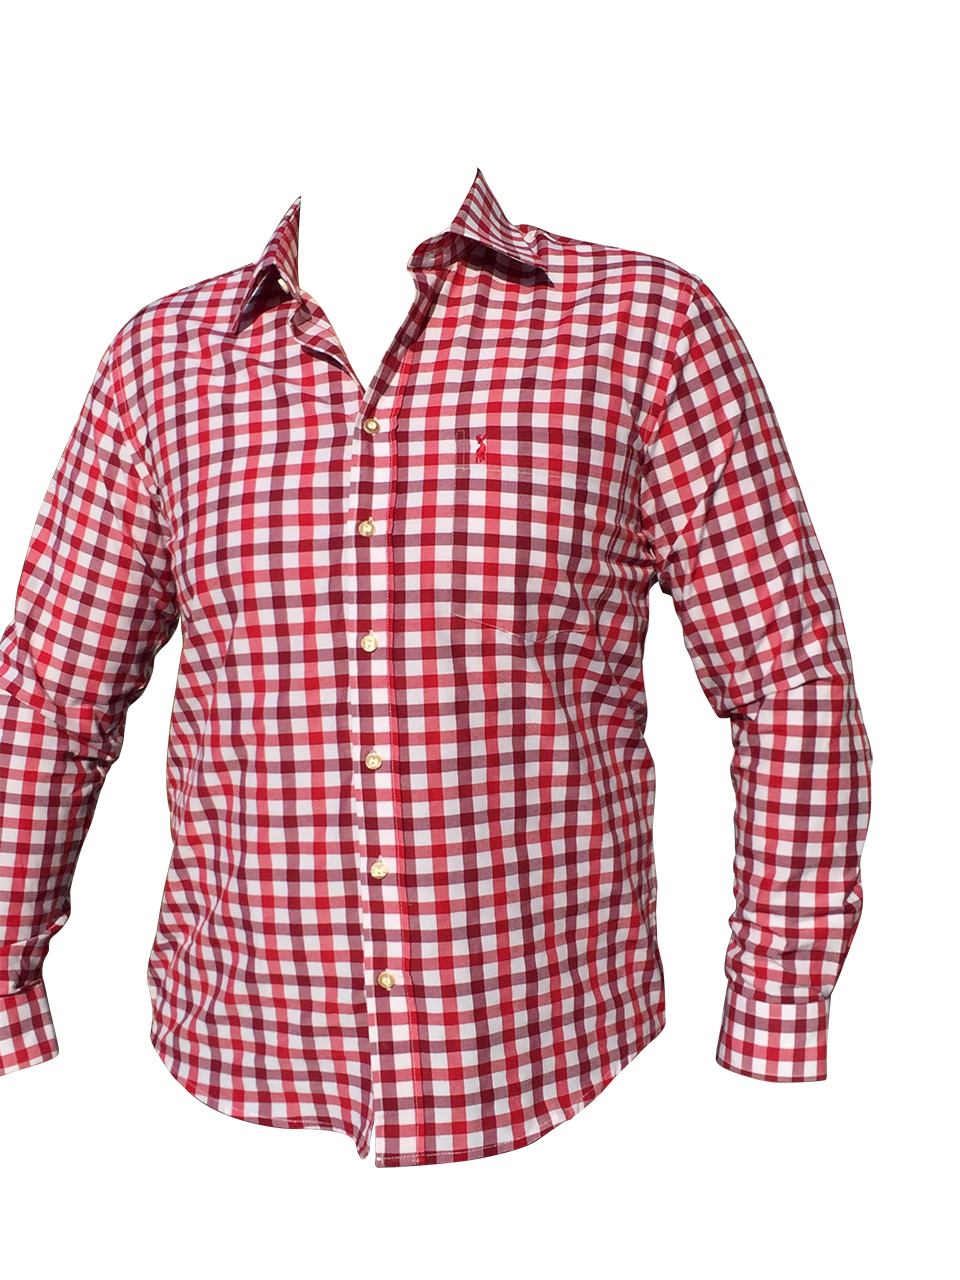 Trachten Set Herren Trachtenlederhose Kurz Rot Hemd Größe 46 bis 60 LE272G